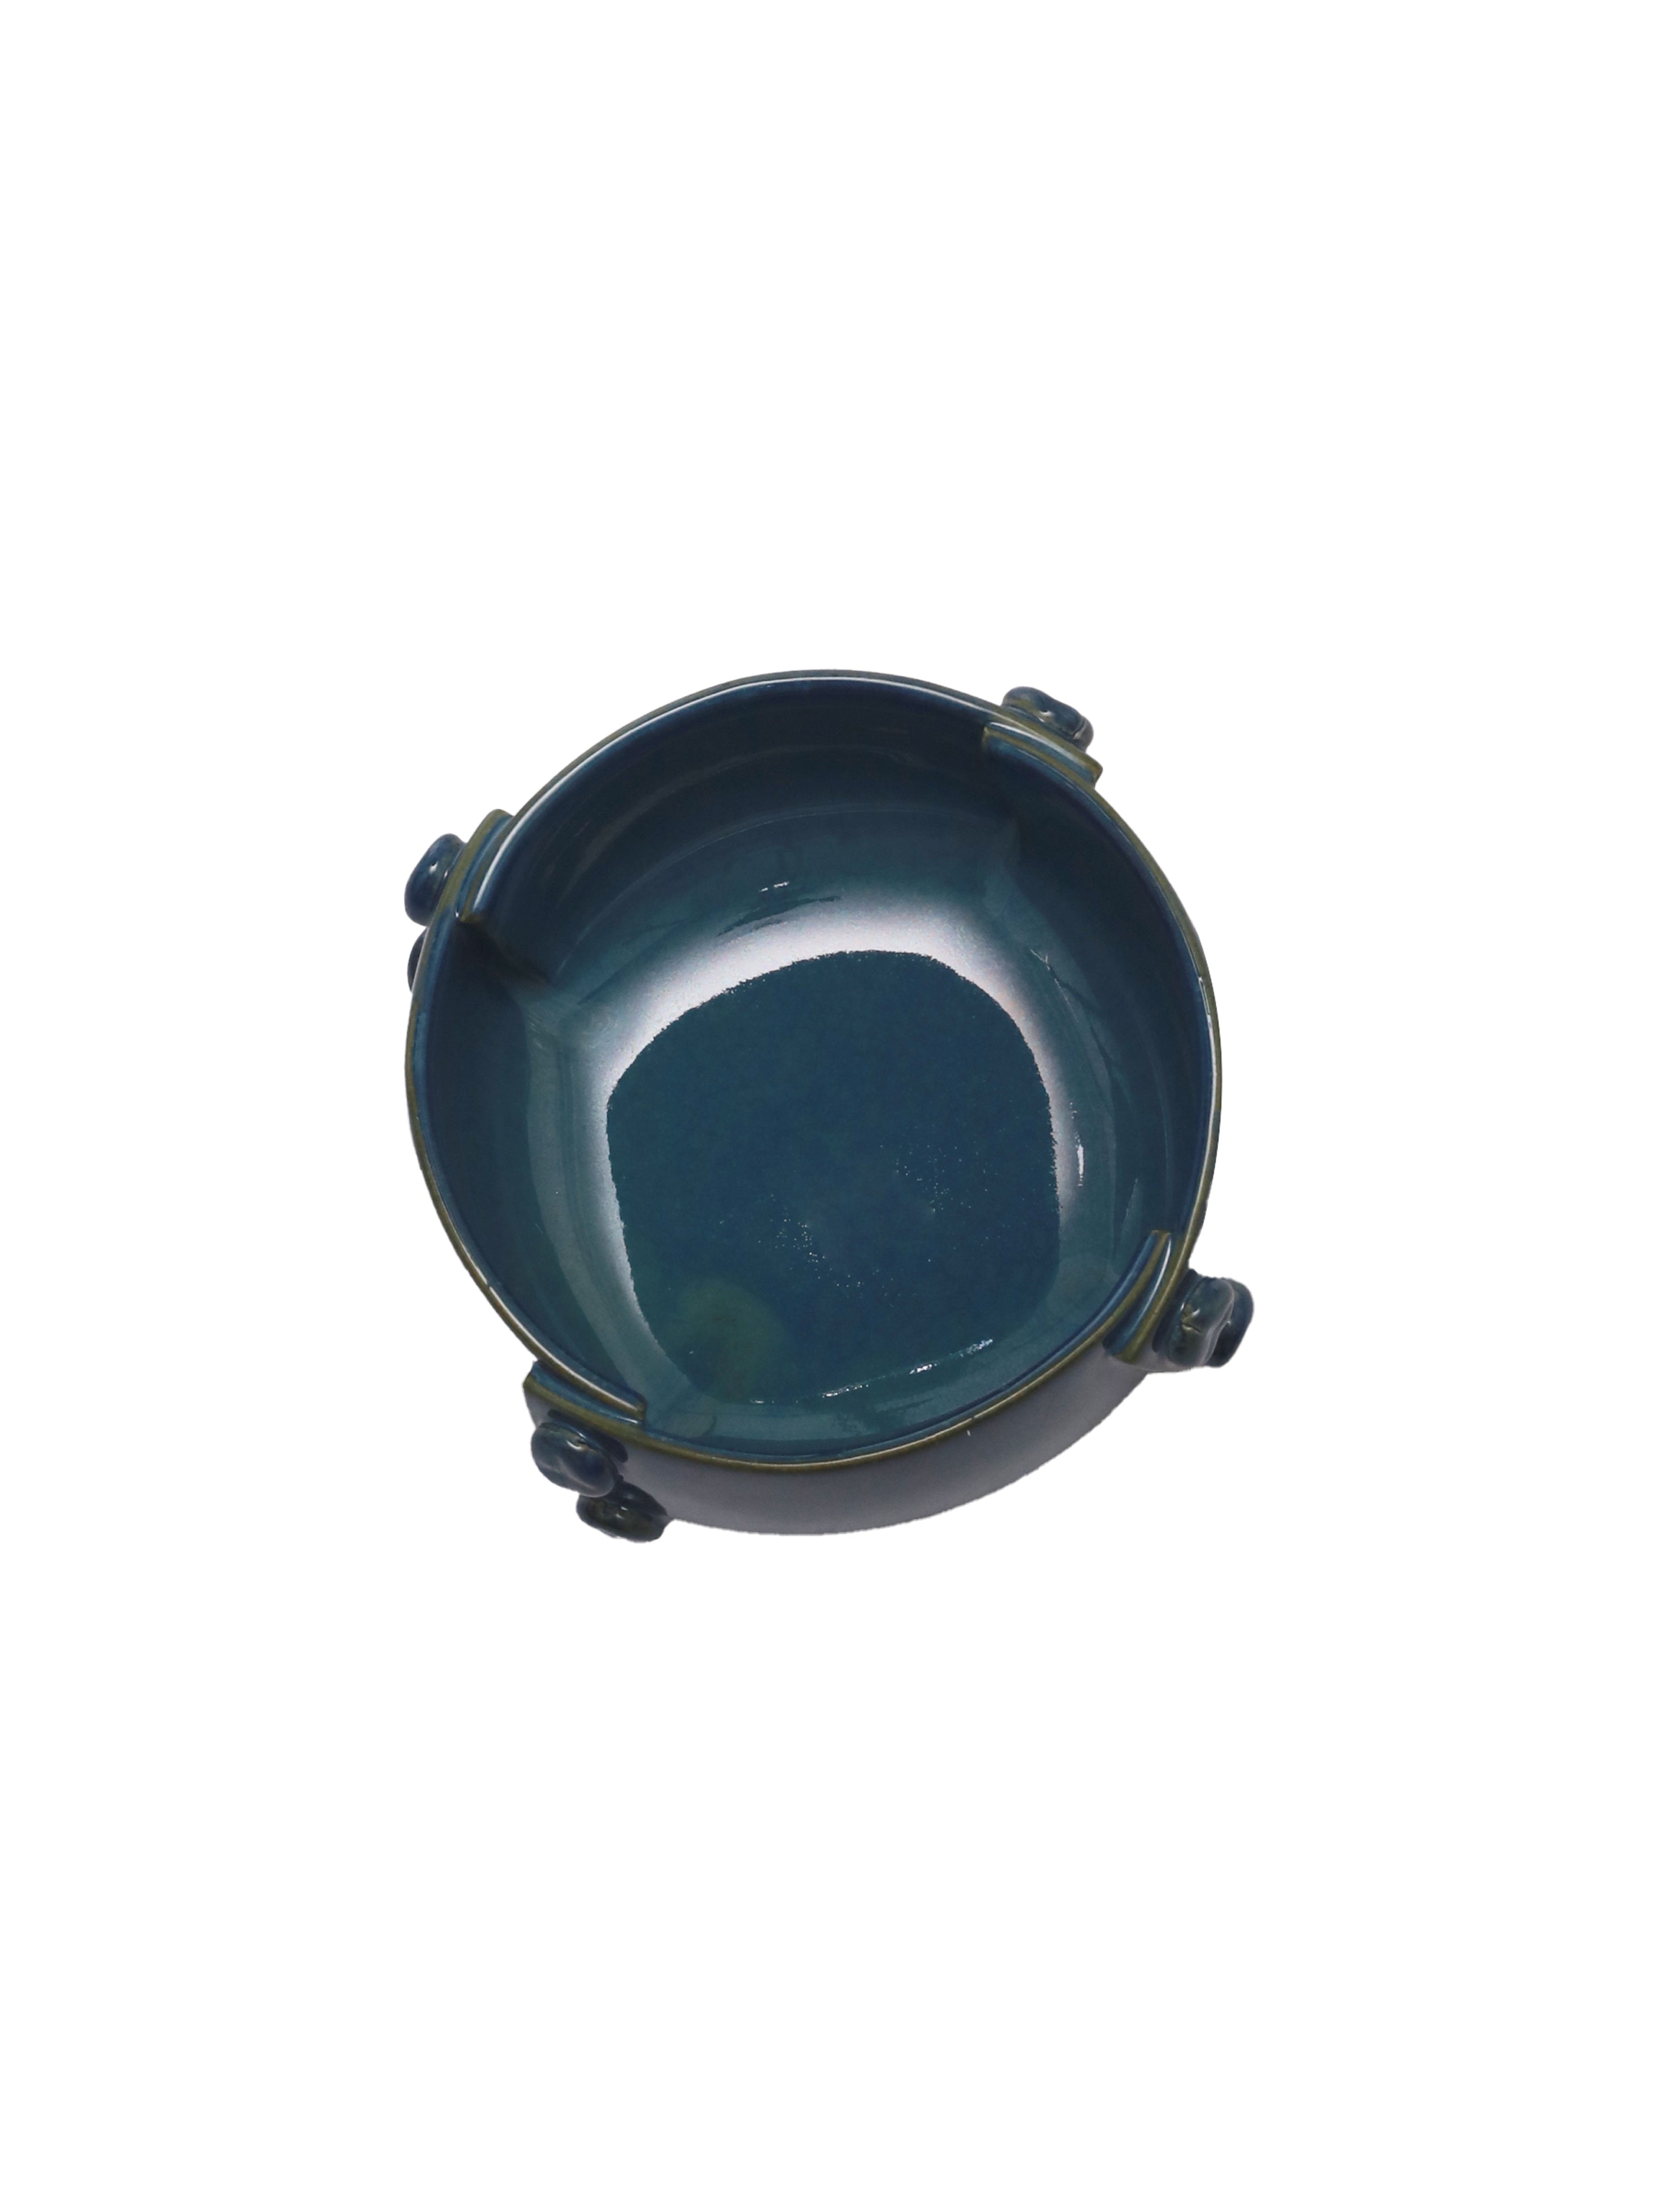 Teal Blue Ceramic Serving Bowl Set of 2